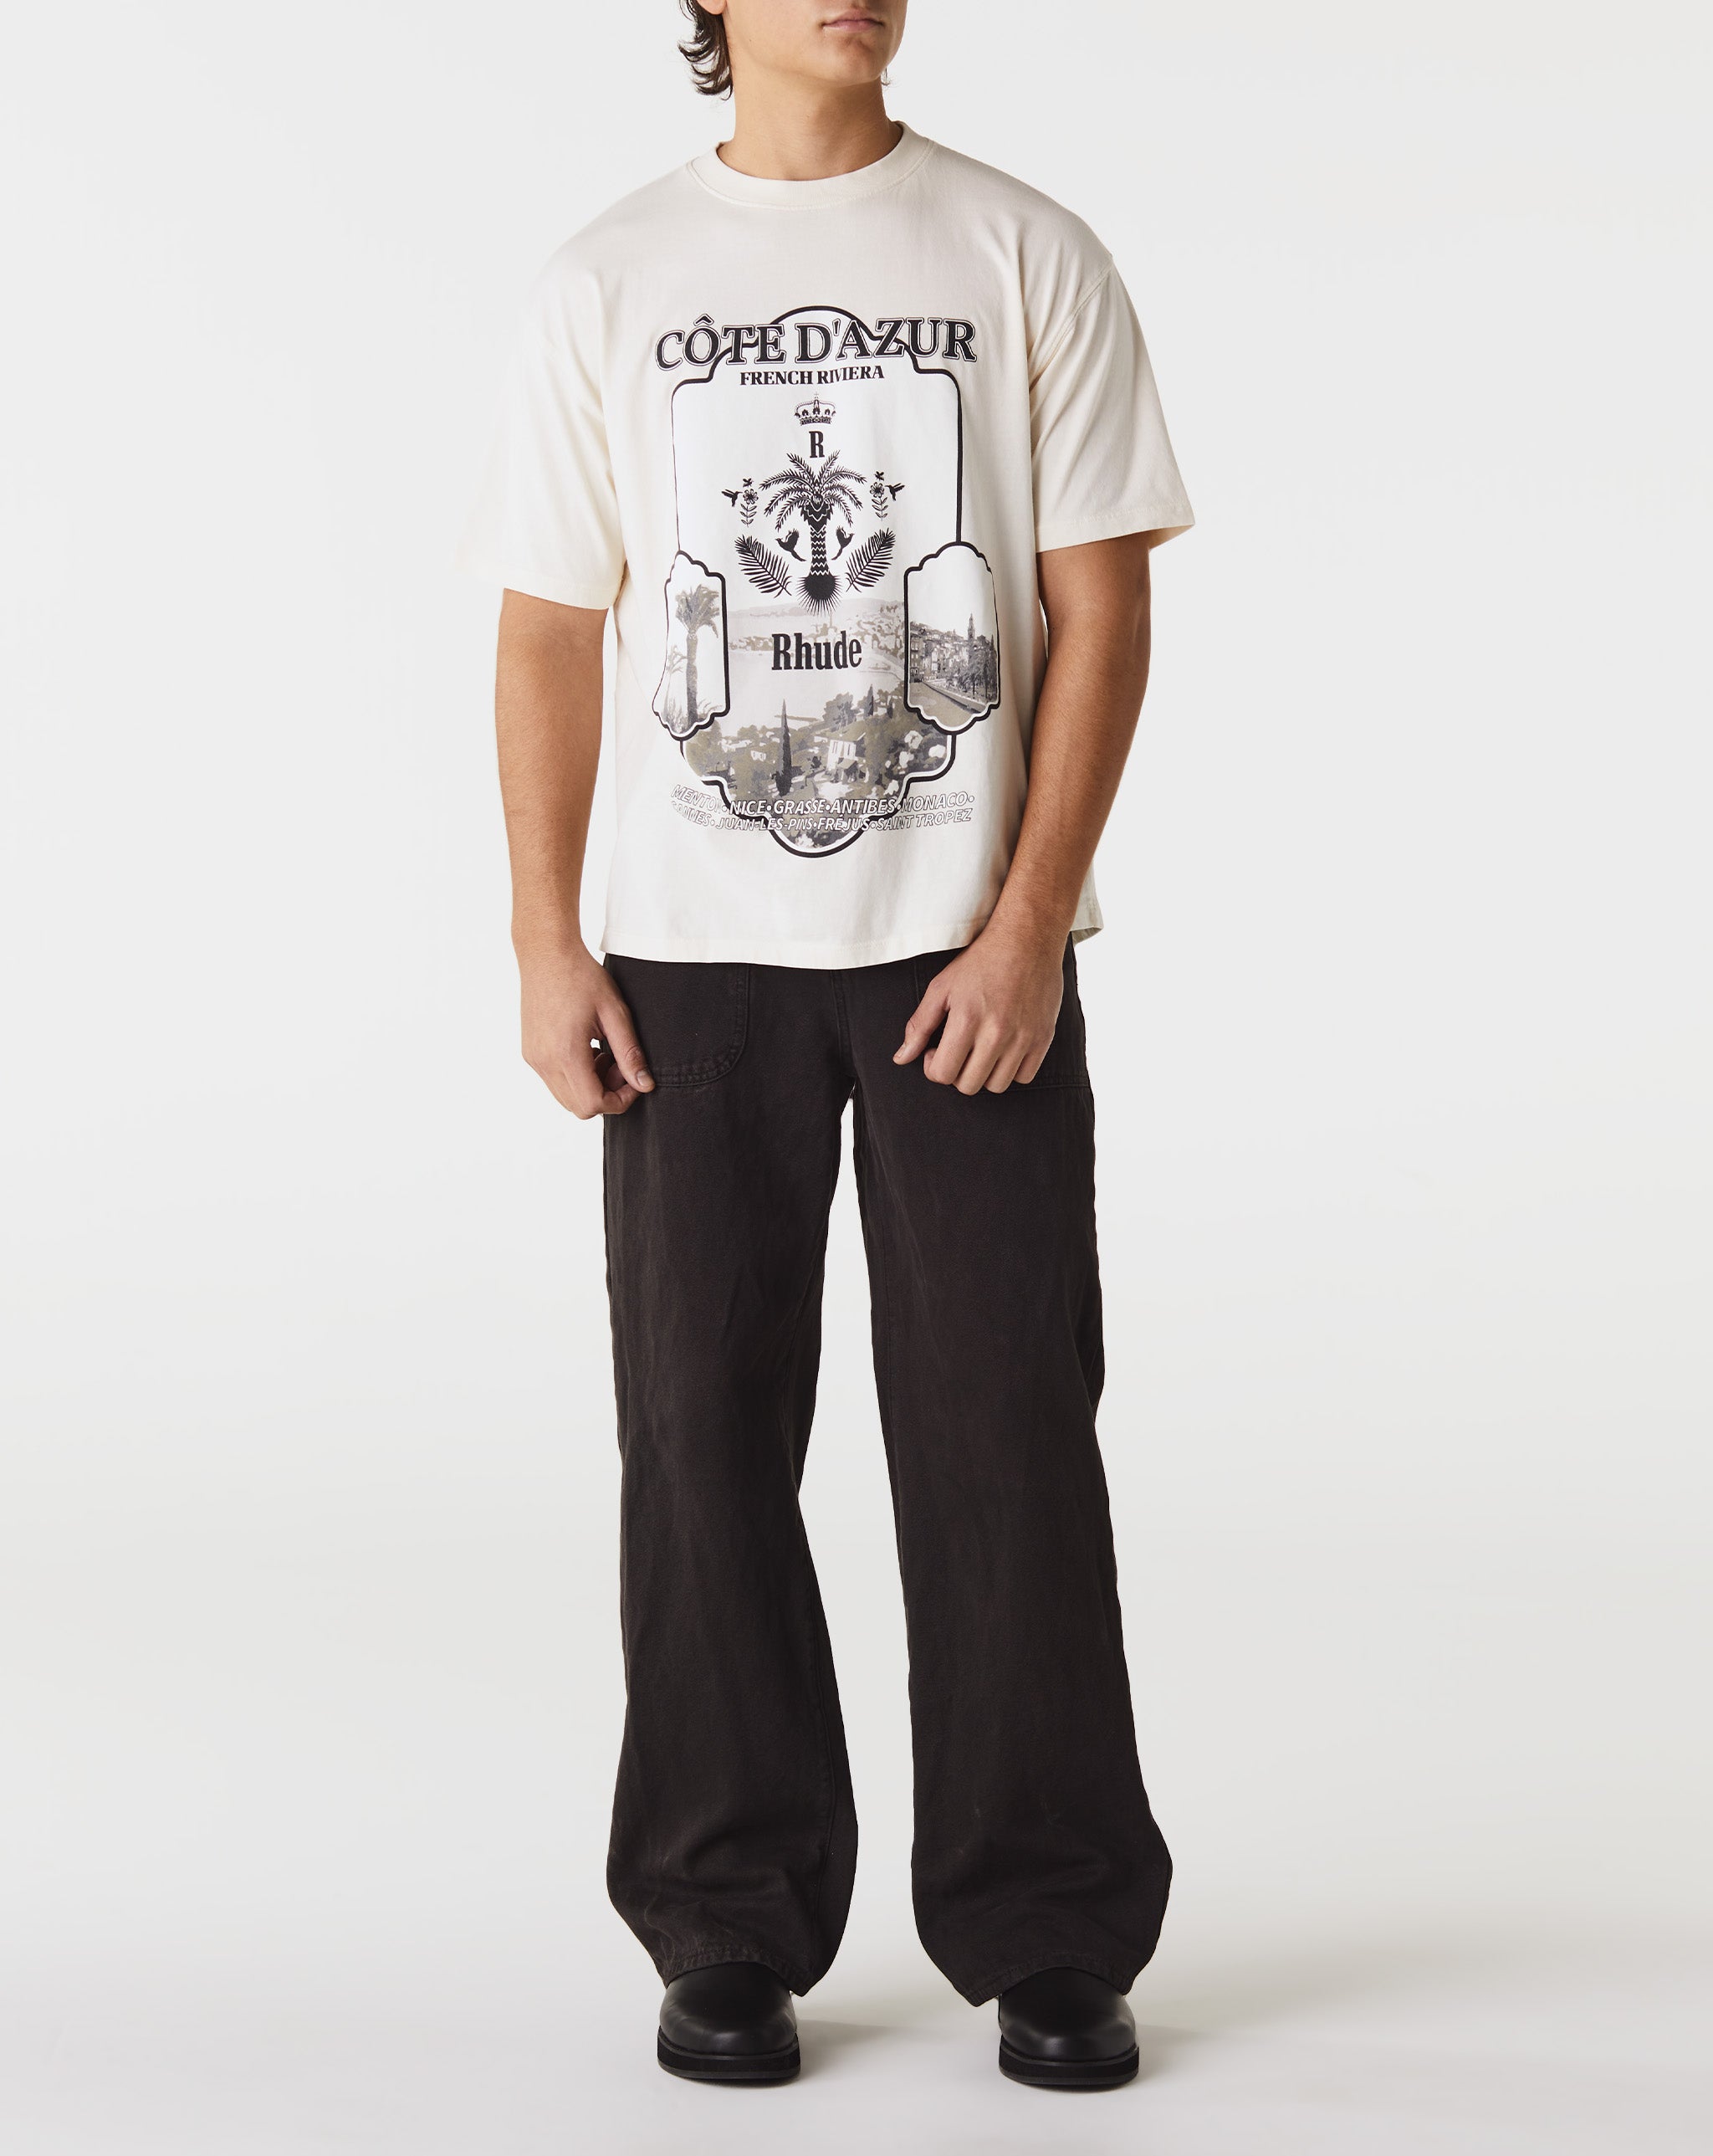 Rhude Azur Mirror T-Shirt  - Cheap Urlfreeze Jordan outlet